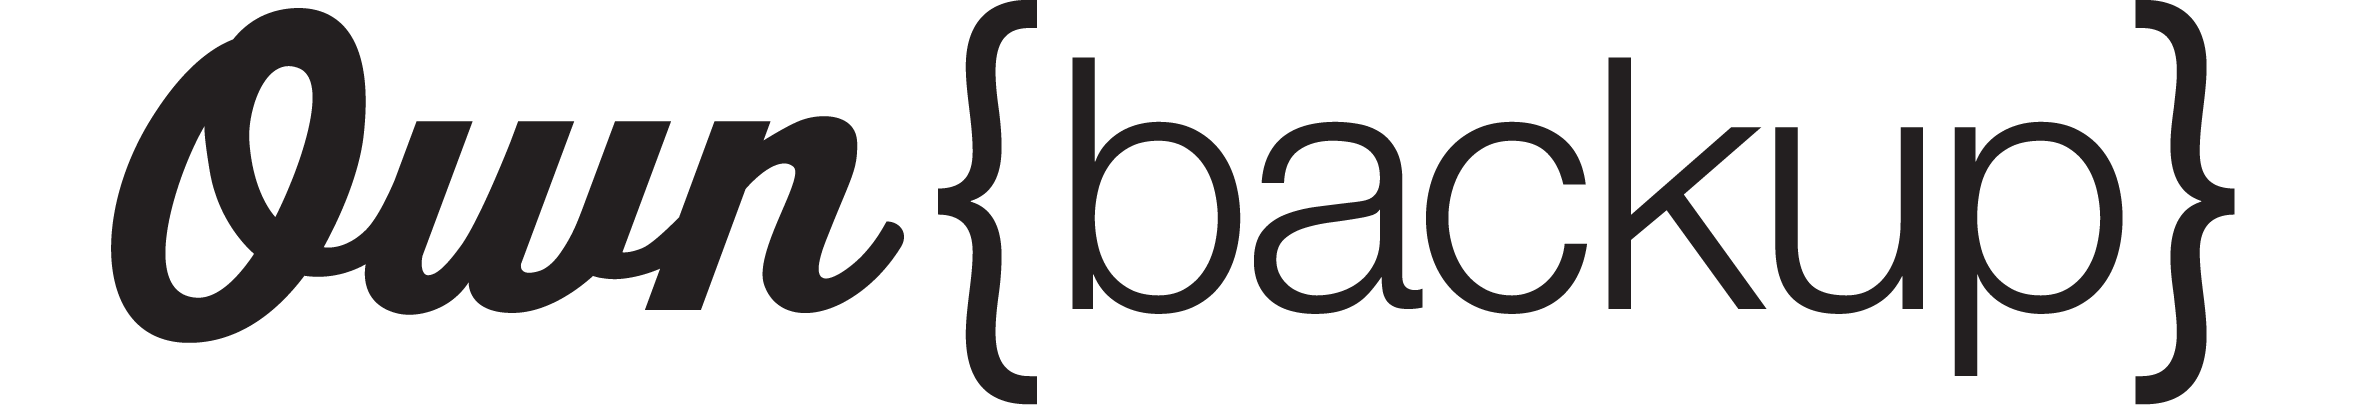 OwnBackup logo